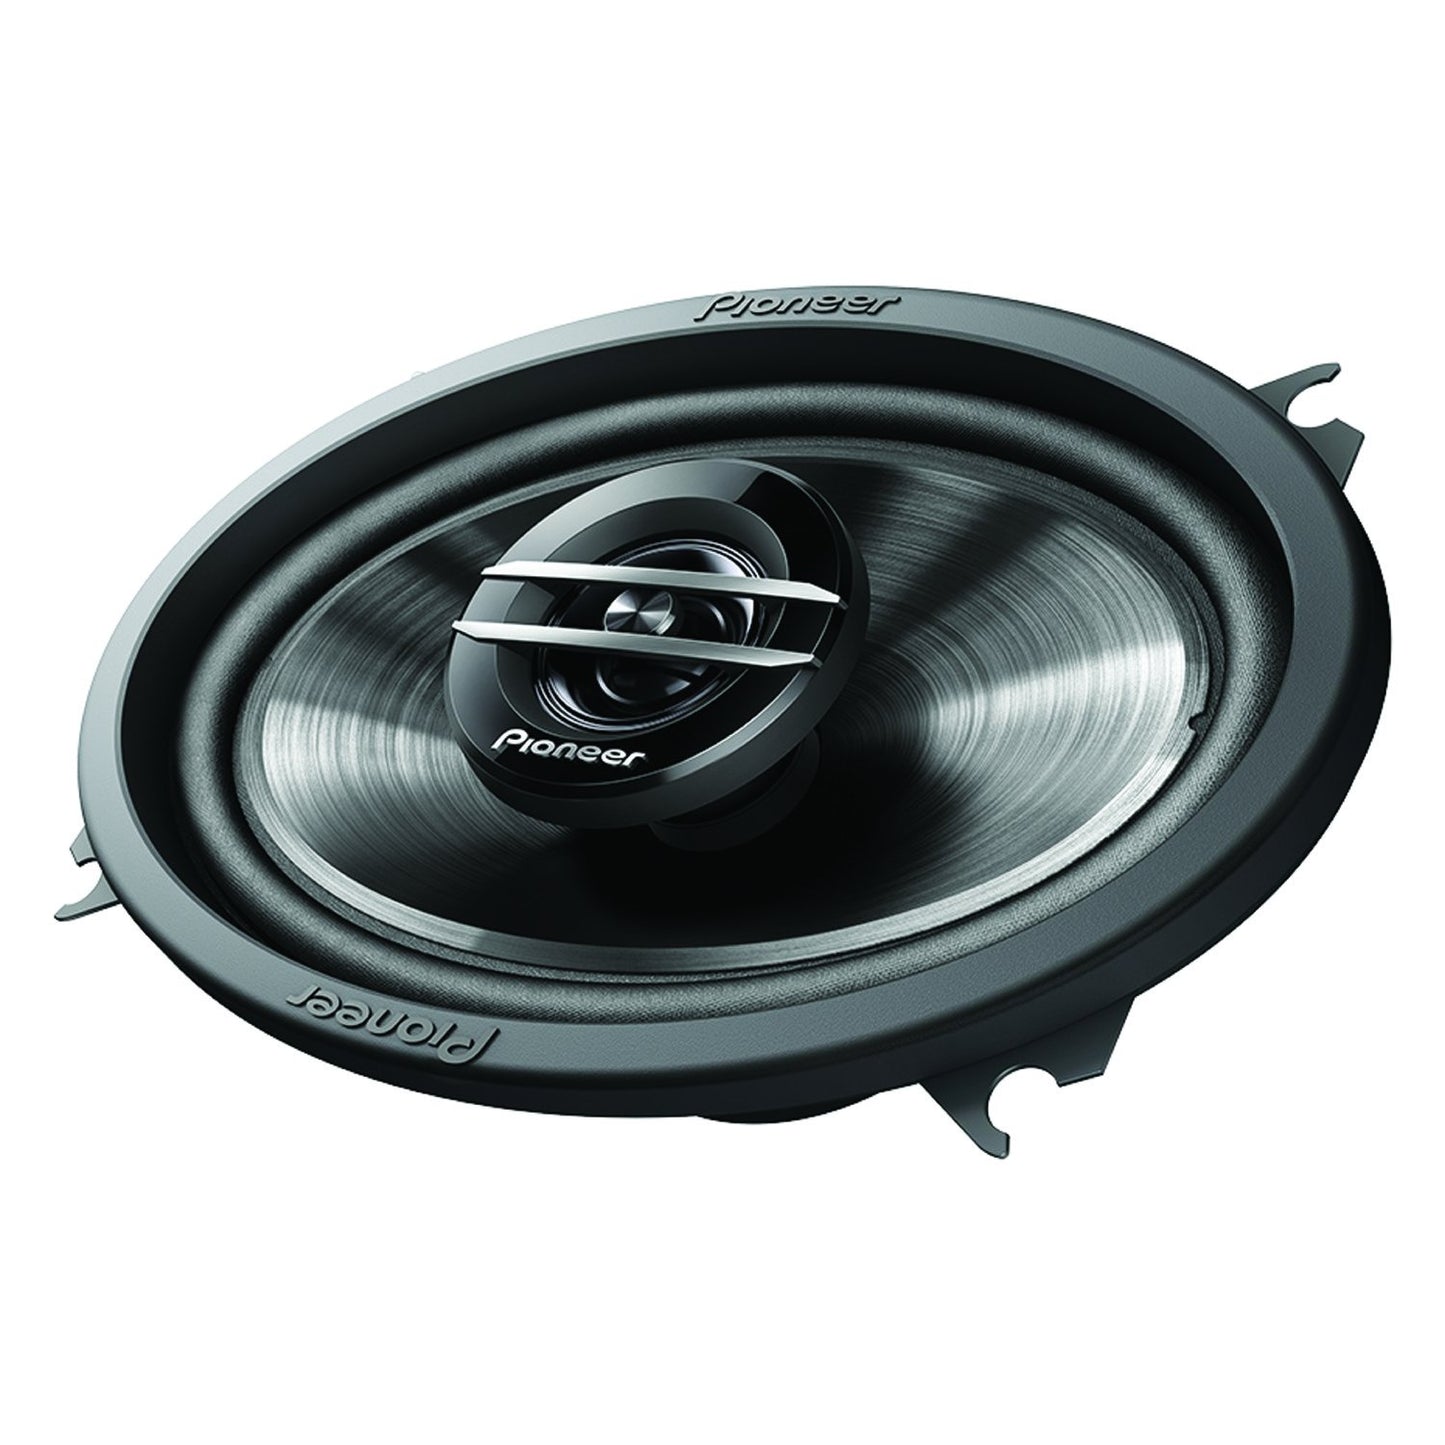 Pioneer TS-G4620S G-Series 4" x 6" 200-Watt 2-Way Coaxial Speakers